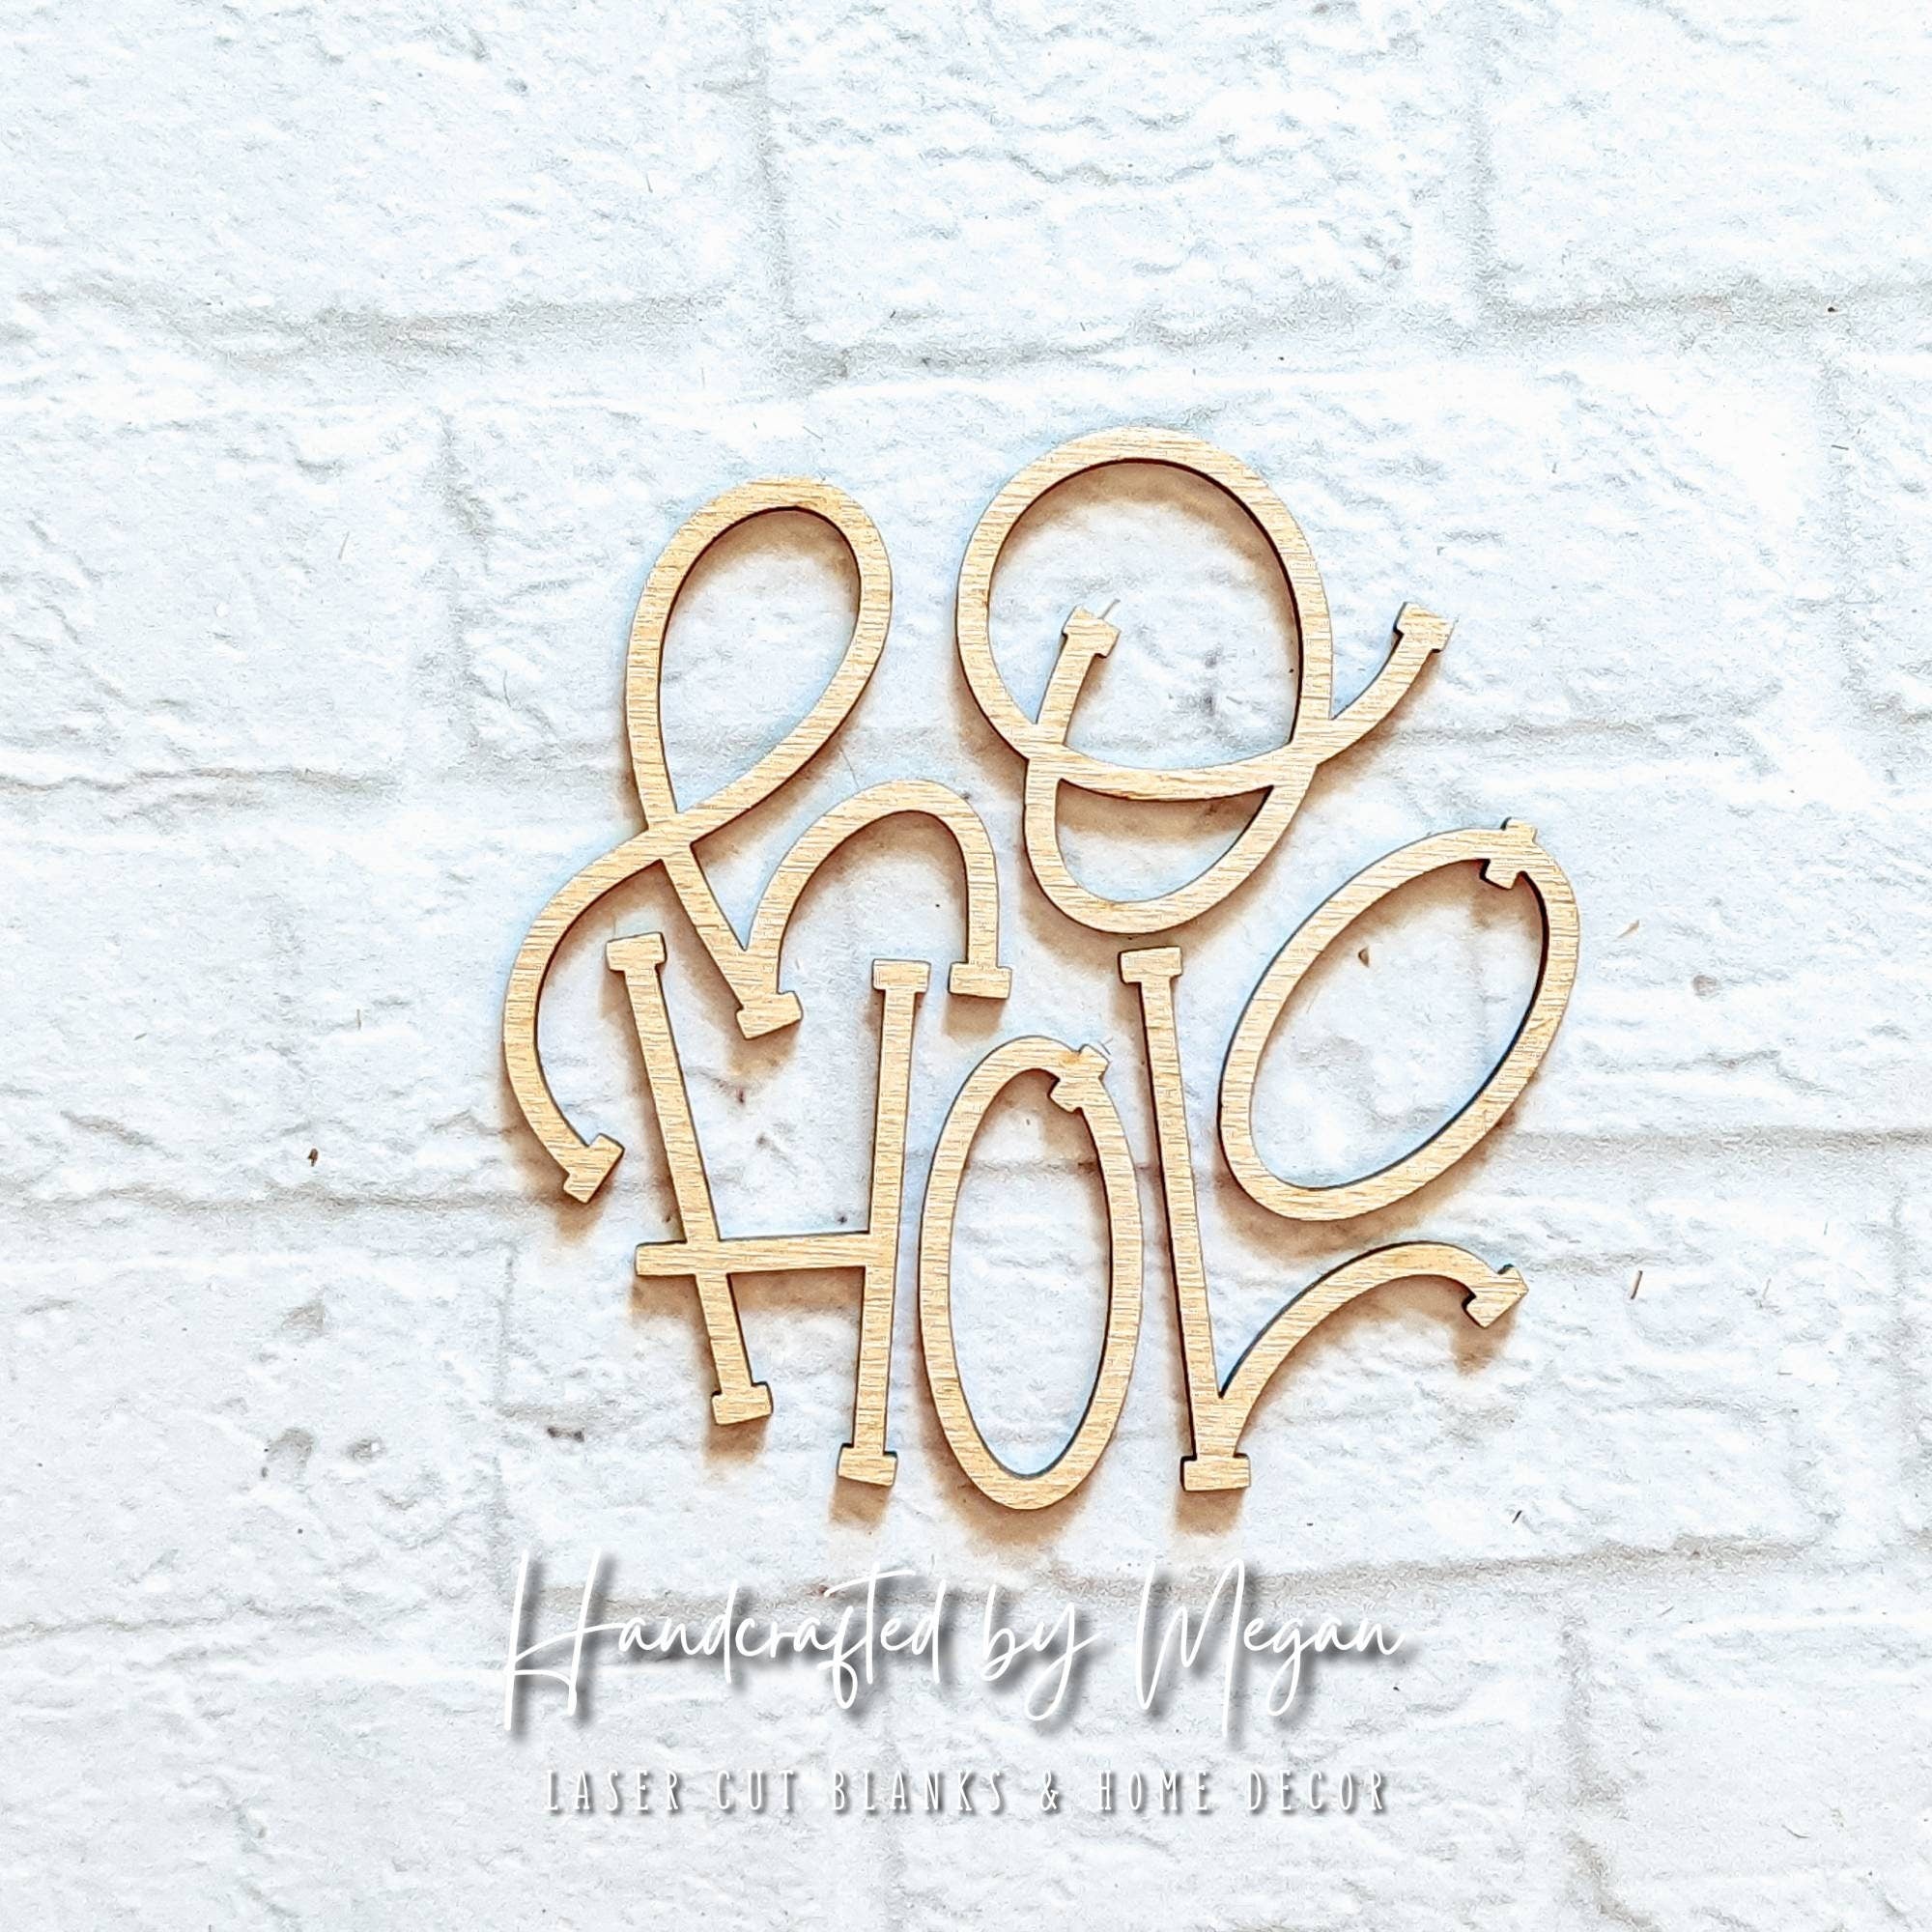 HO HO HO set - Various Sizes - Wooden Blanks- Wooden Shapes - laser cut shape - seasonal rounds